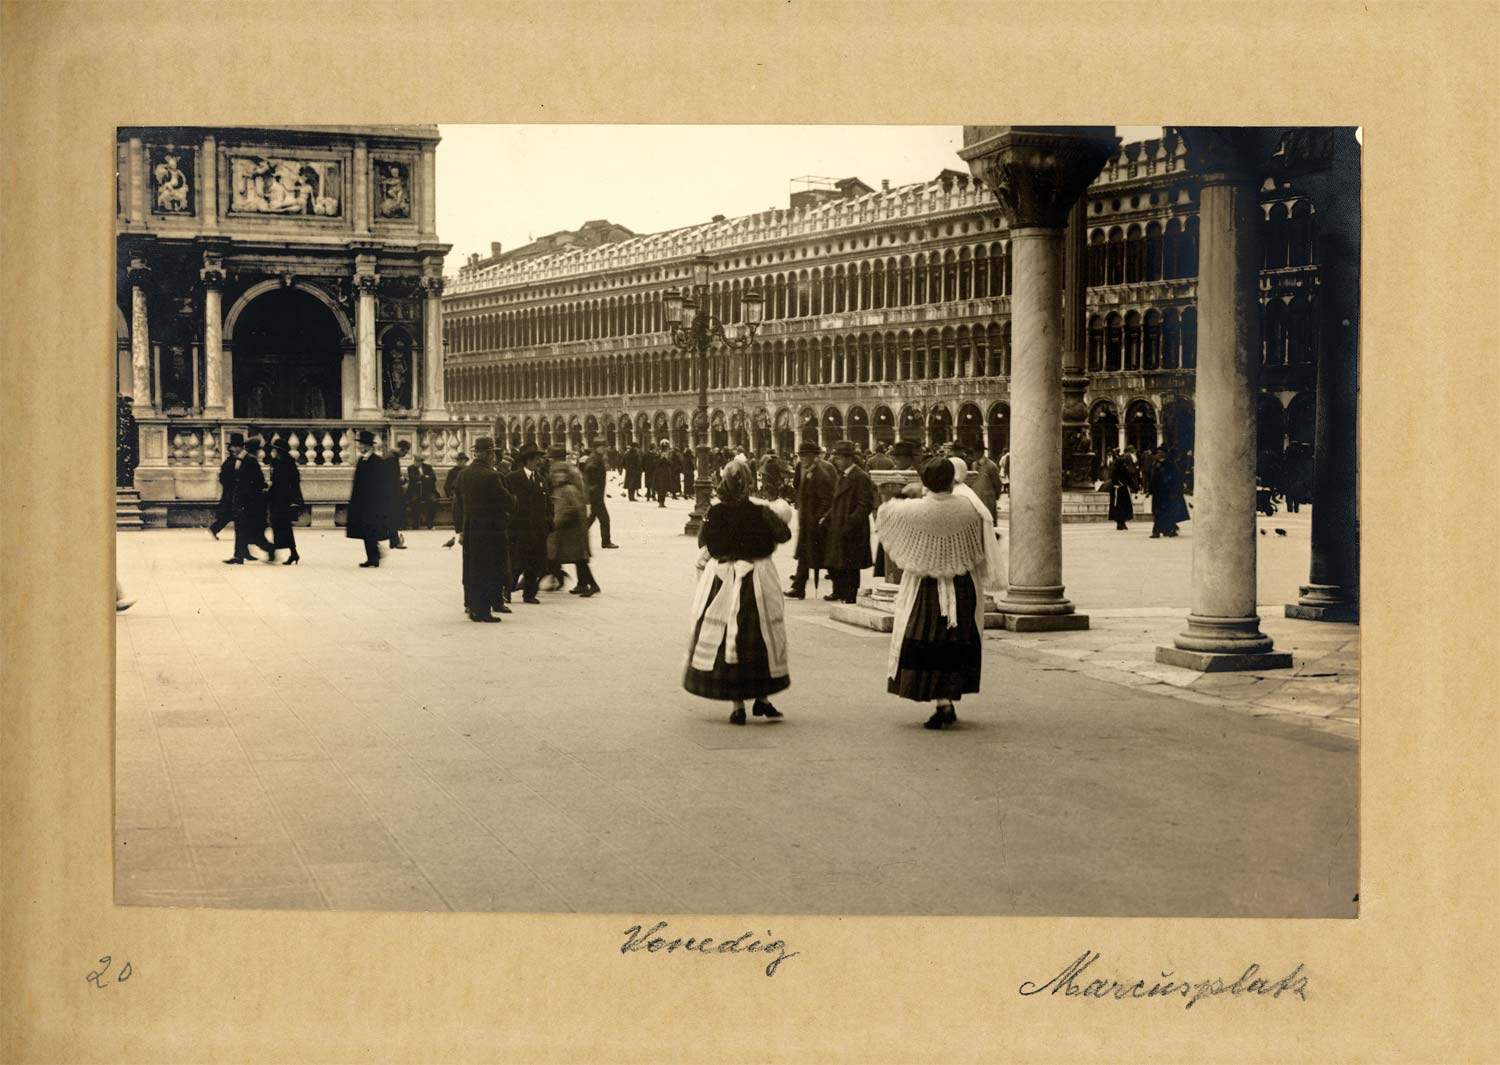 Venise, le voyage de Michèle Halberstadt à travers les photographies de Max Halberstadt est exposé